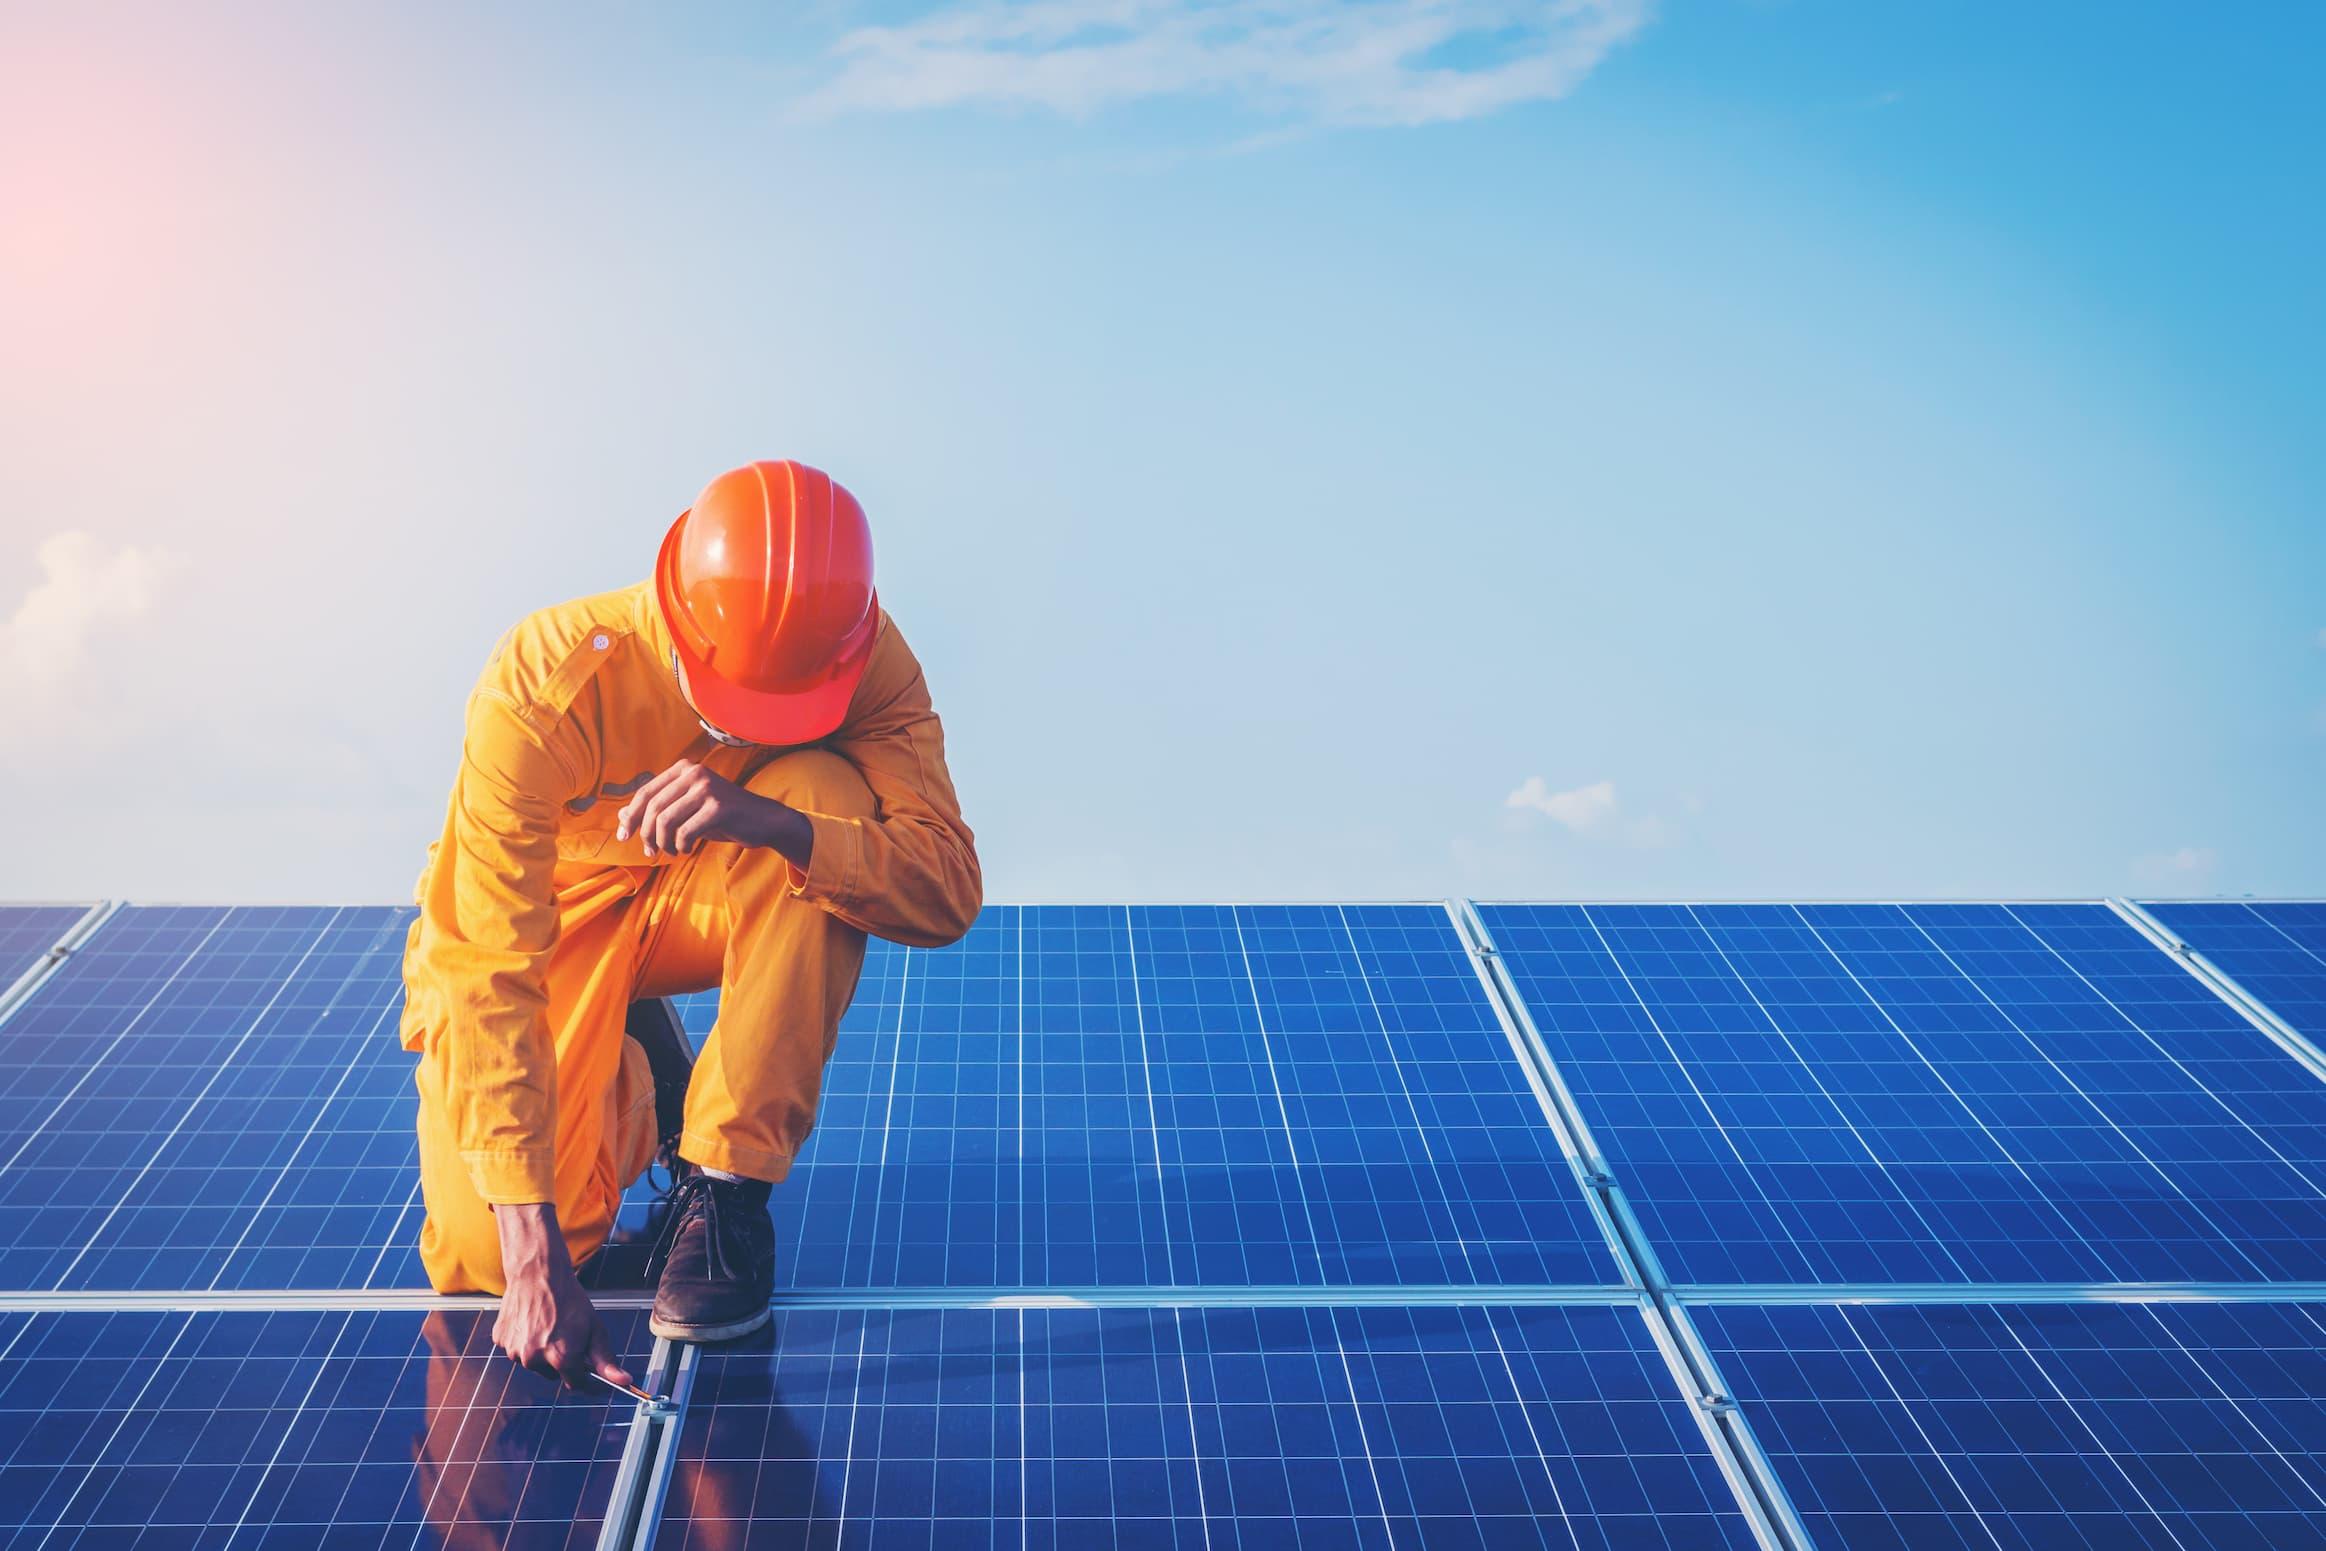 Sebrae Minas - Como utilizar e manter a eficiência da usina fotovoltaica?